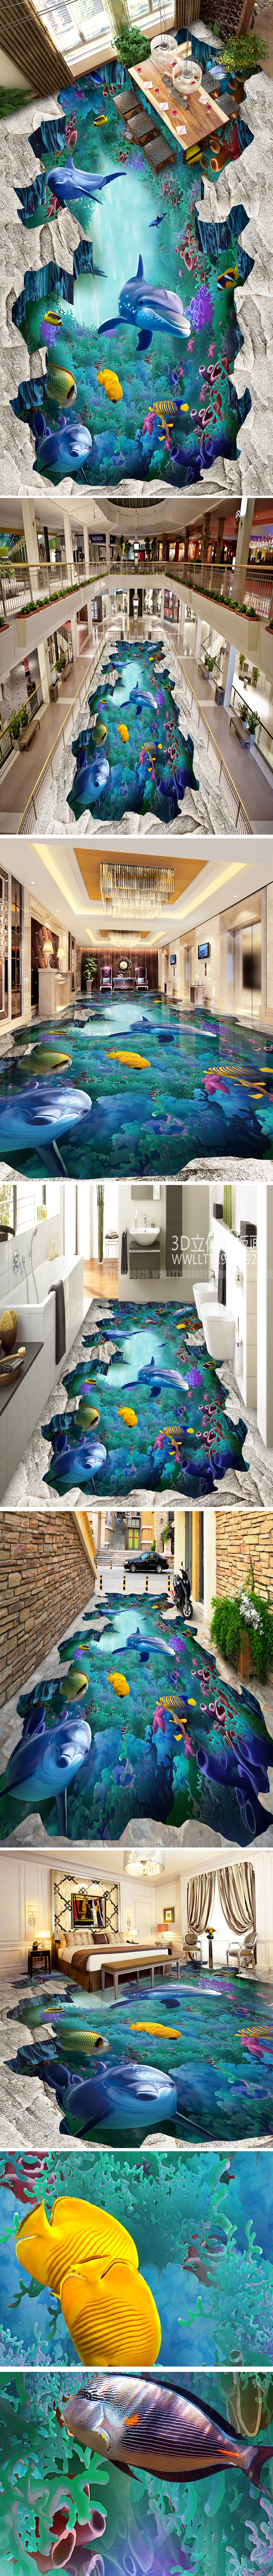 海洋世界浴室艺术3d立体画地画地板